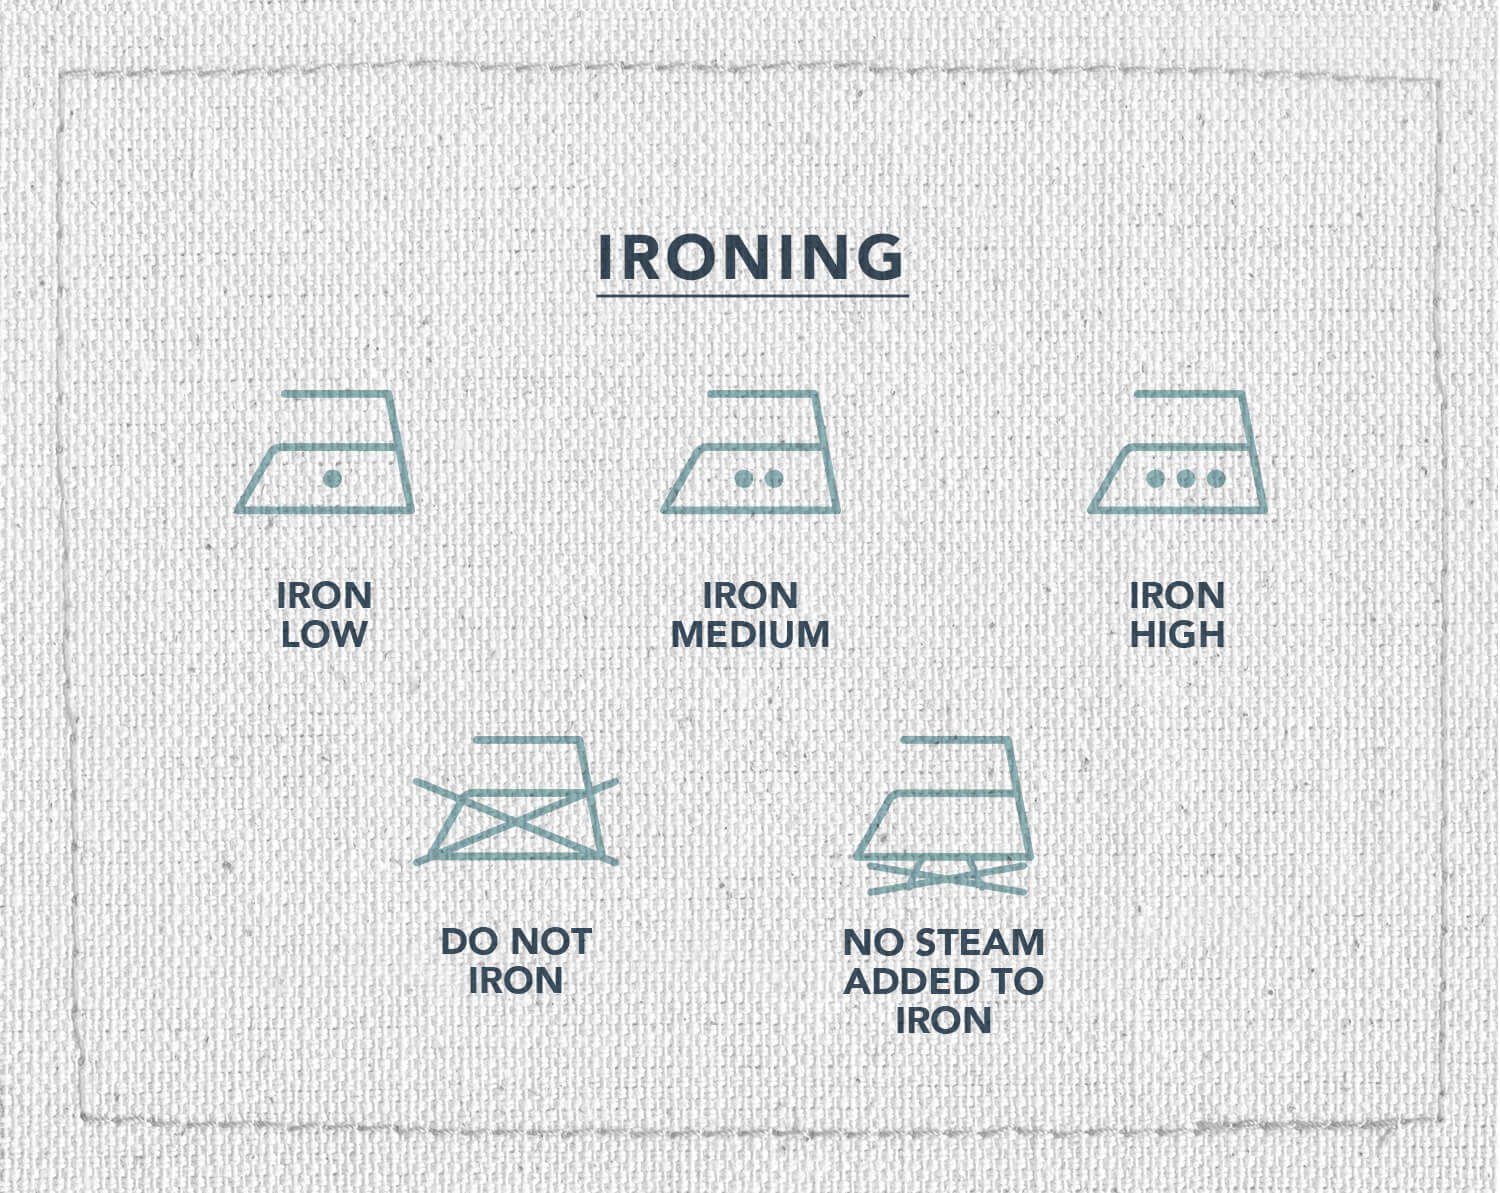 Une infographie de cinq symboles d'instructions de repassage : repasser à chaleur faible, moyenne, élevée, ne pas repasser ou pas de vapeur, ajouté au fer à repasser.